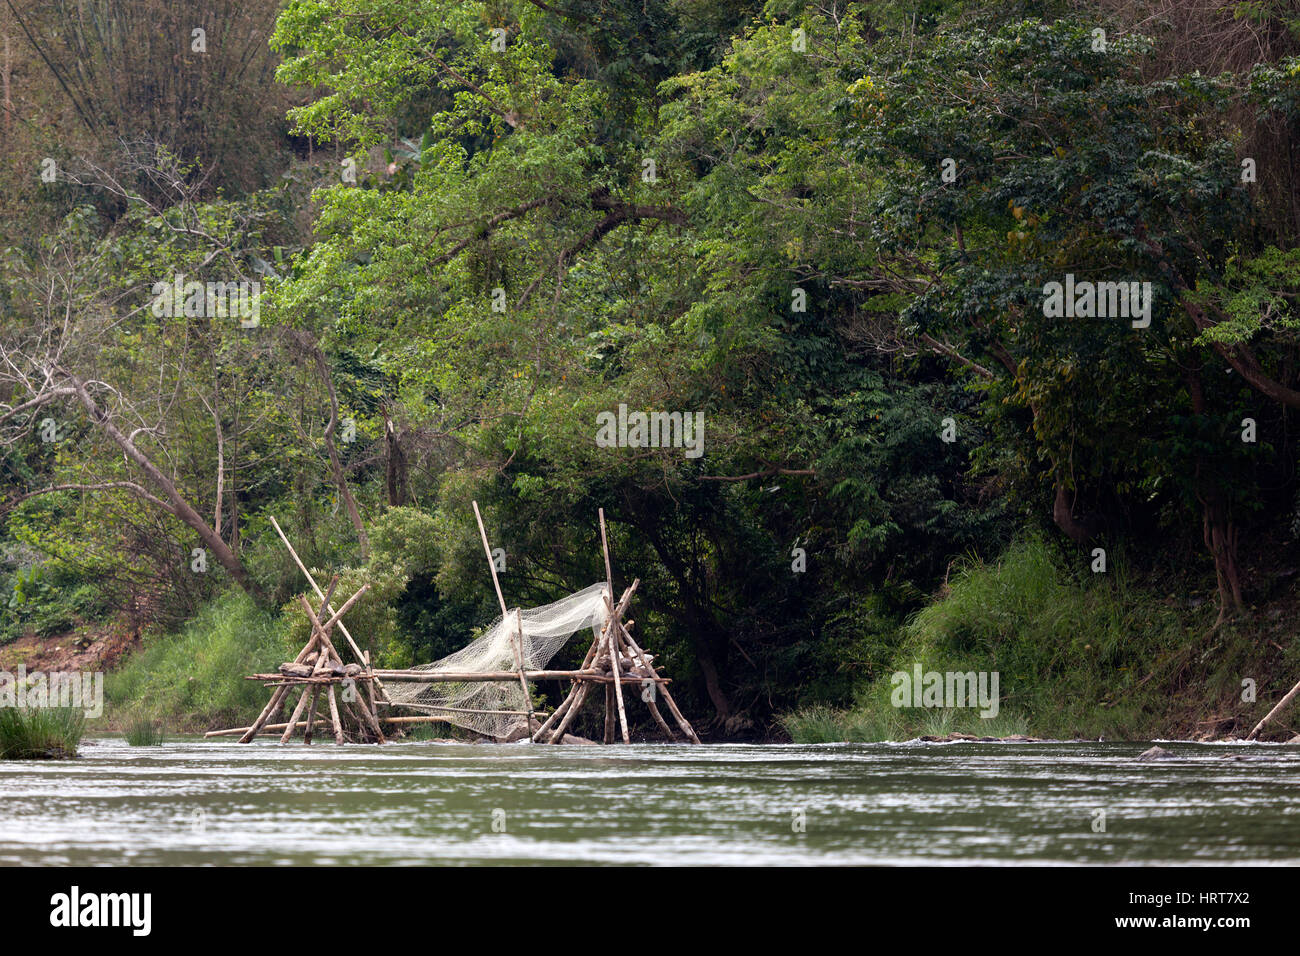 Eine Verzweigungsstruktur mit Netz für eine Fischfalle auf die Ou-River, einem Nebenfluss des Mekong. Struktur de Branchages et Filet pour un Piège À Poissons. Stockfoto